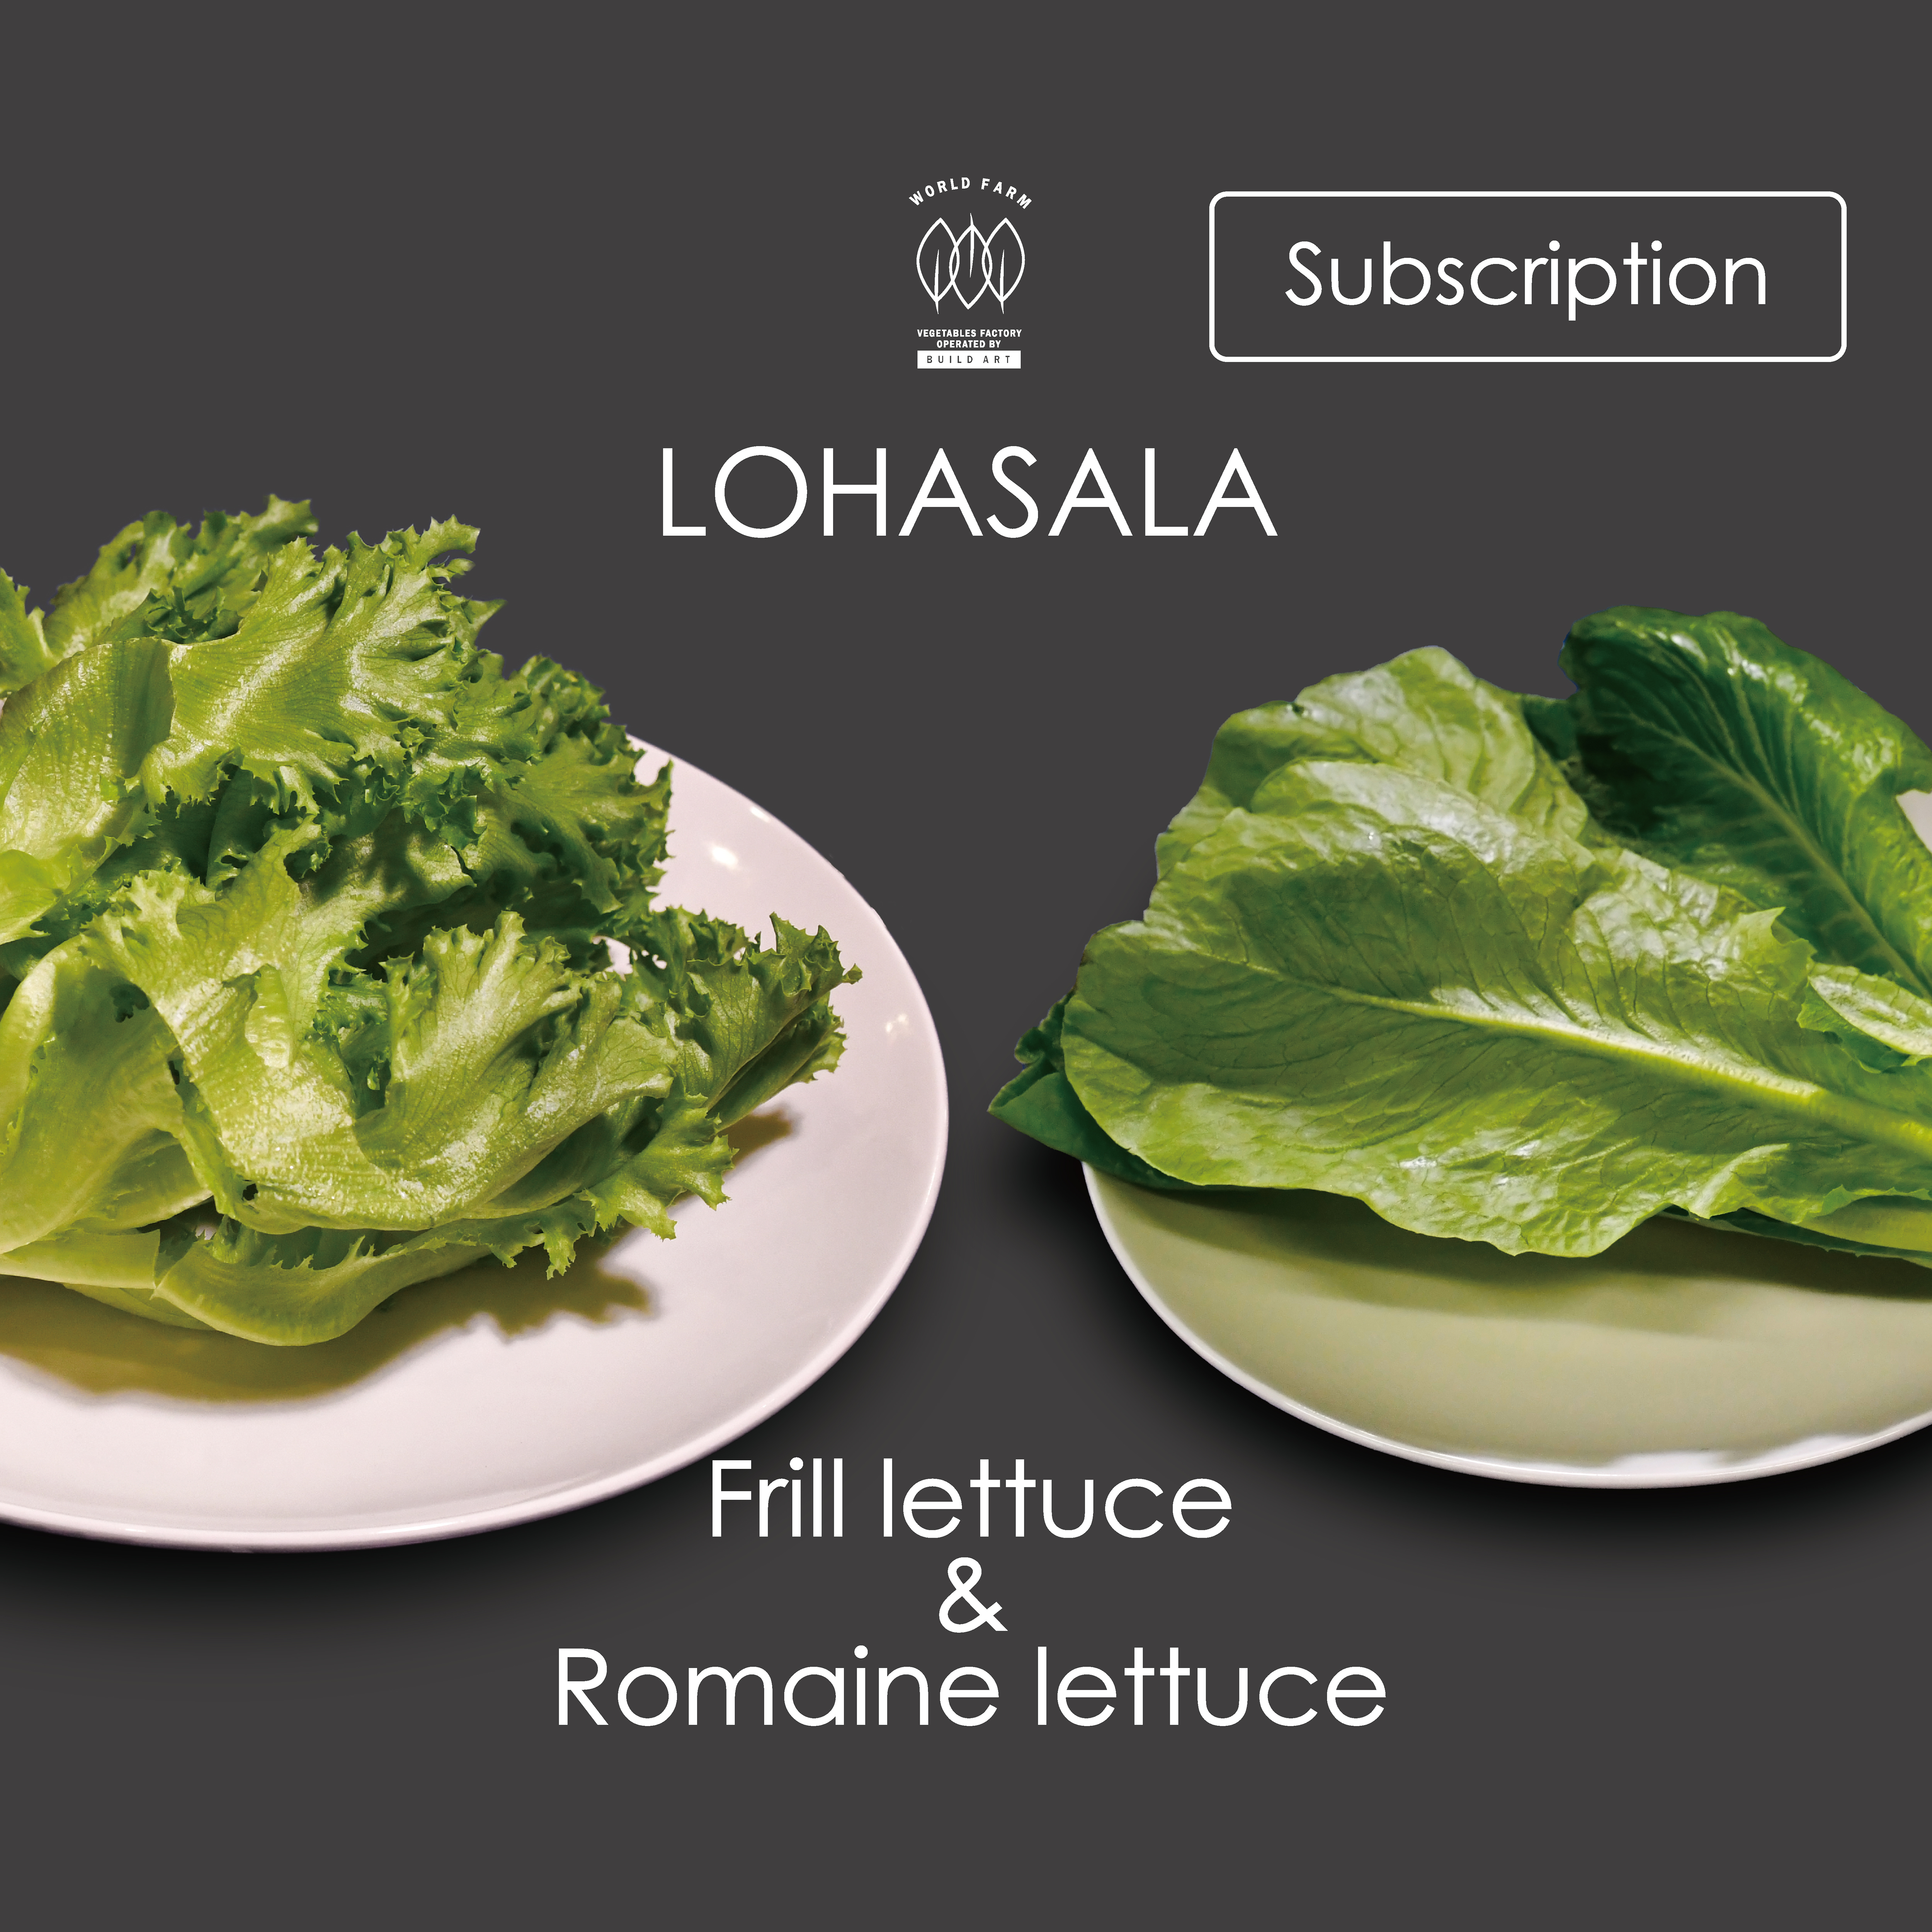 定期 Lohasala フリル ロメイン各3個 洗わずに食べられるled野菜 農薬不使用工場栽培野菜 Lohasala ロハサラ